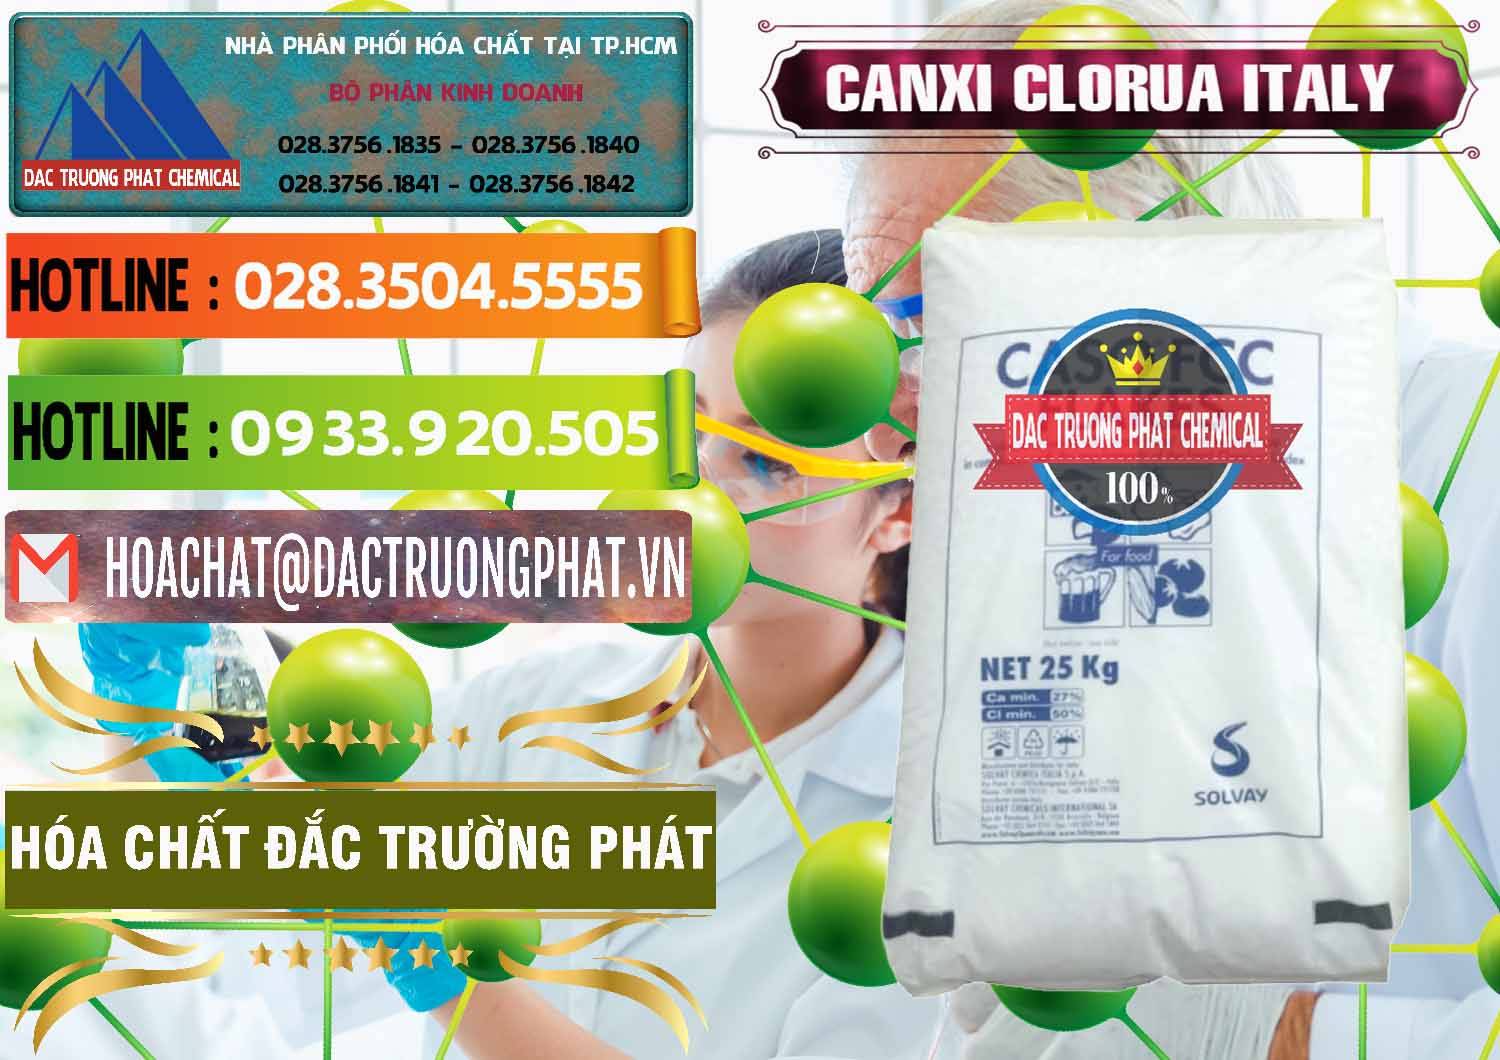 Đơn vị chuyên bán ( cung ứng ) CaCl2 – Canxi Clorua Food Grade Ý Italy - 0435 - Nhà phân phối - cung cấp hóa chất tại TP.HCM - cungcaphoachat.com.vn